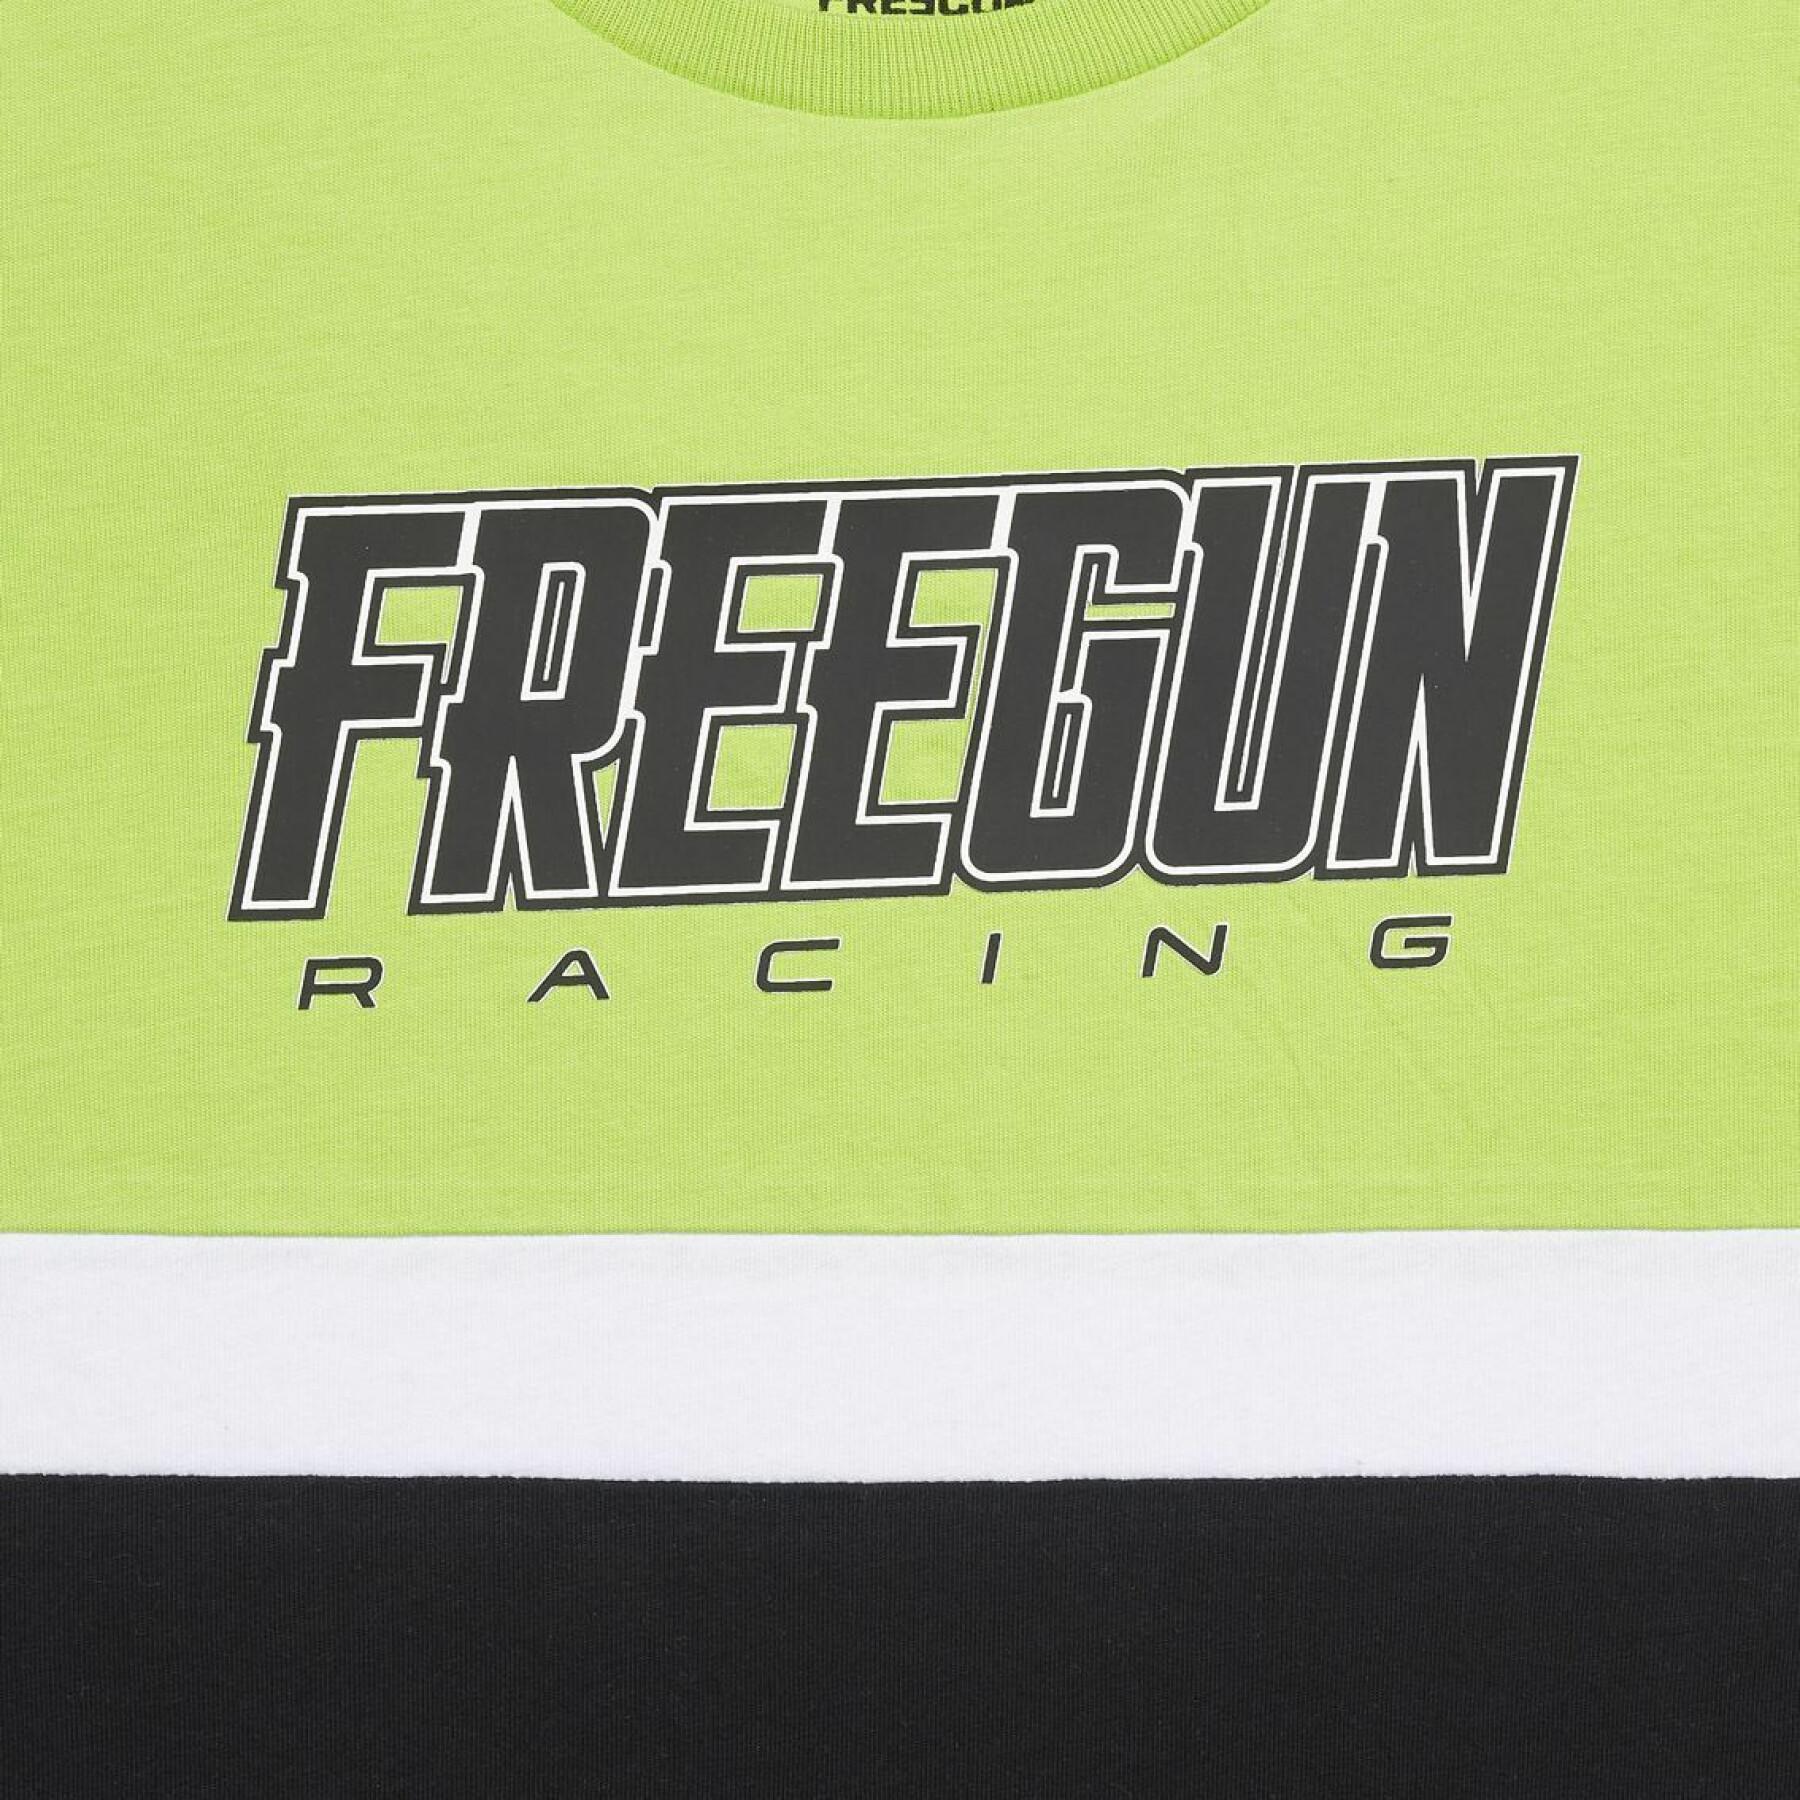 T-Shirt Freegun